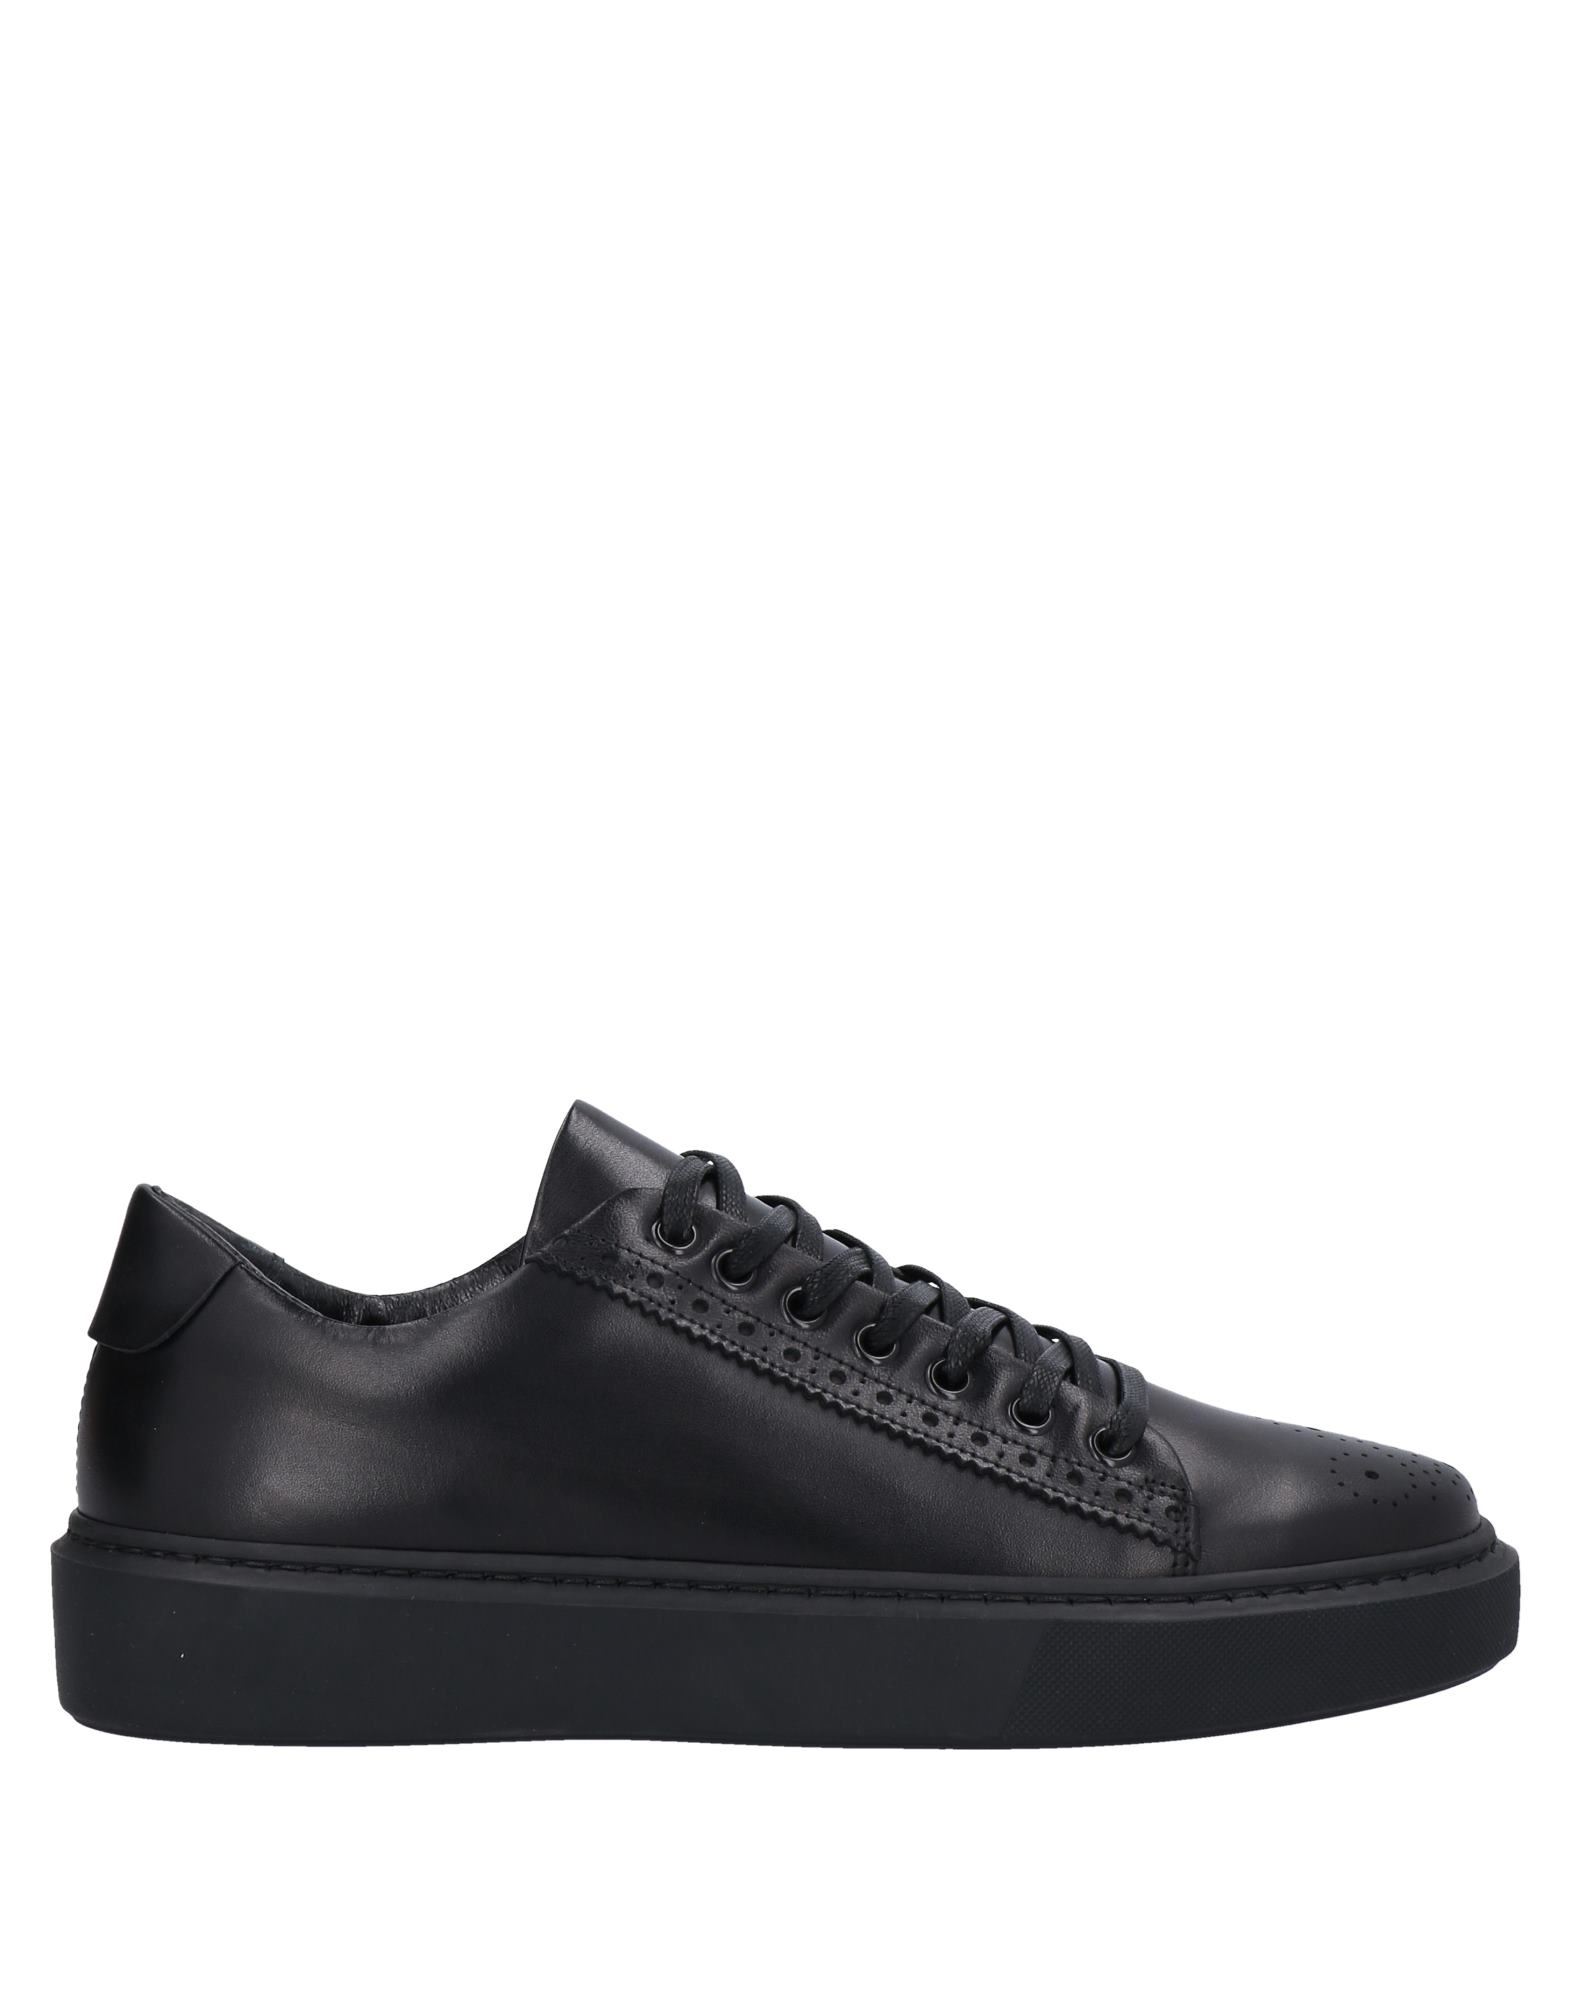 Angelo Pallotta Sneakers In Black | ModeSens